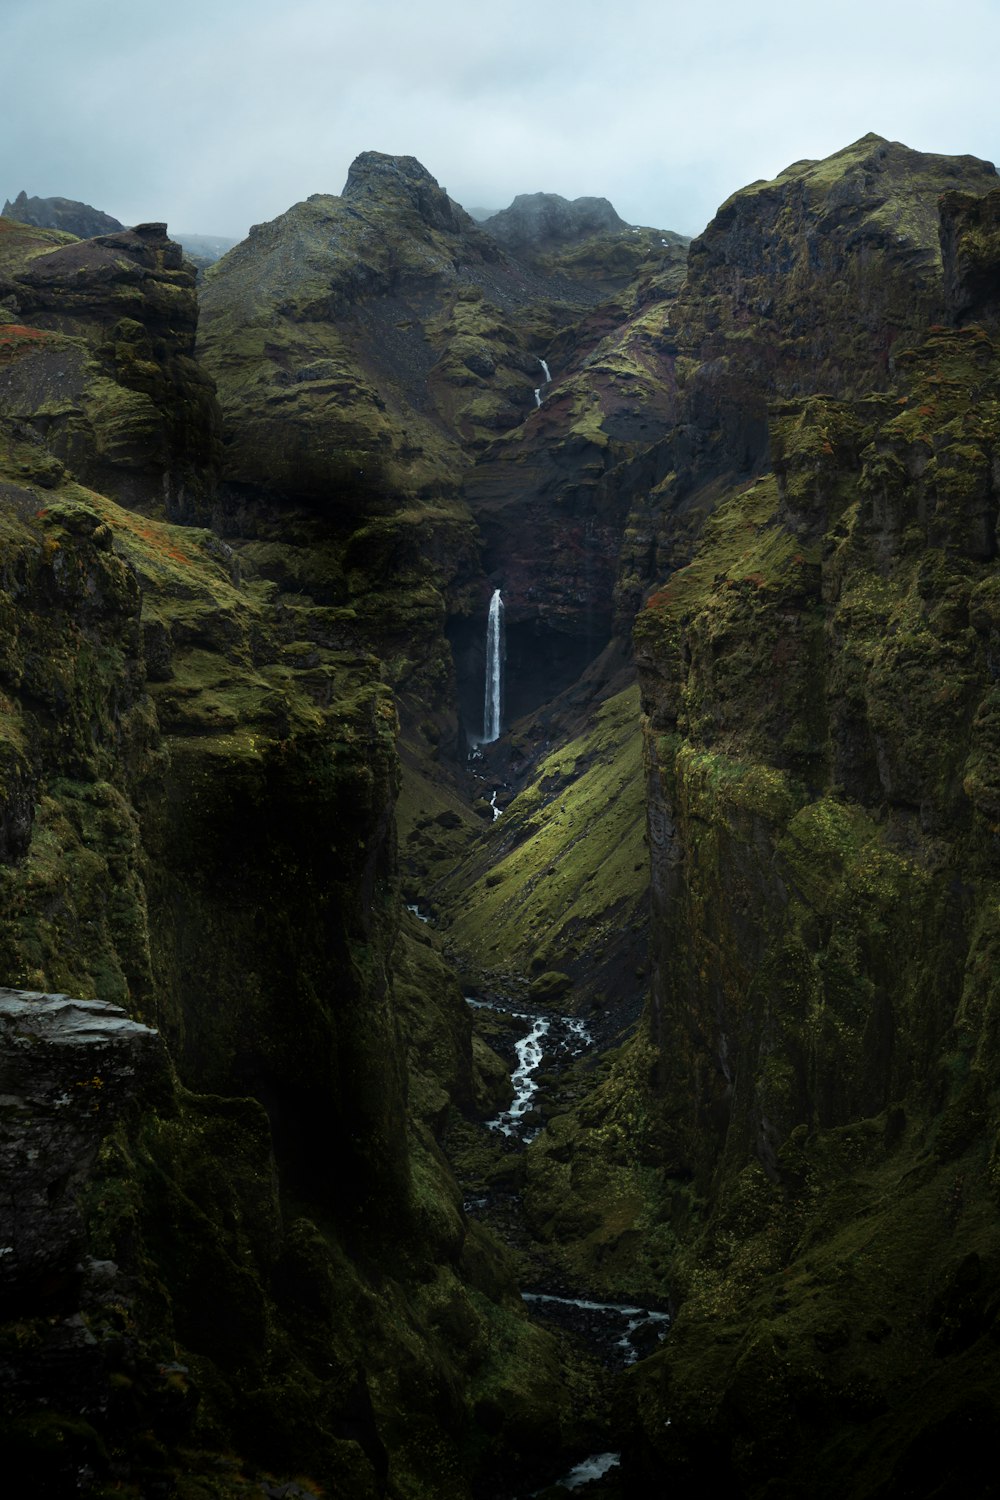 una cascata in una zona rocciosa